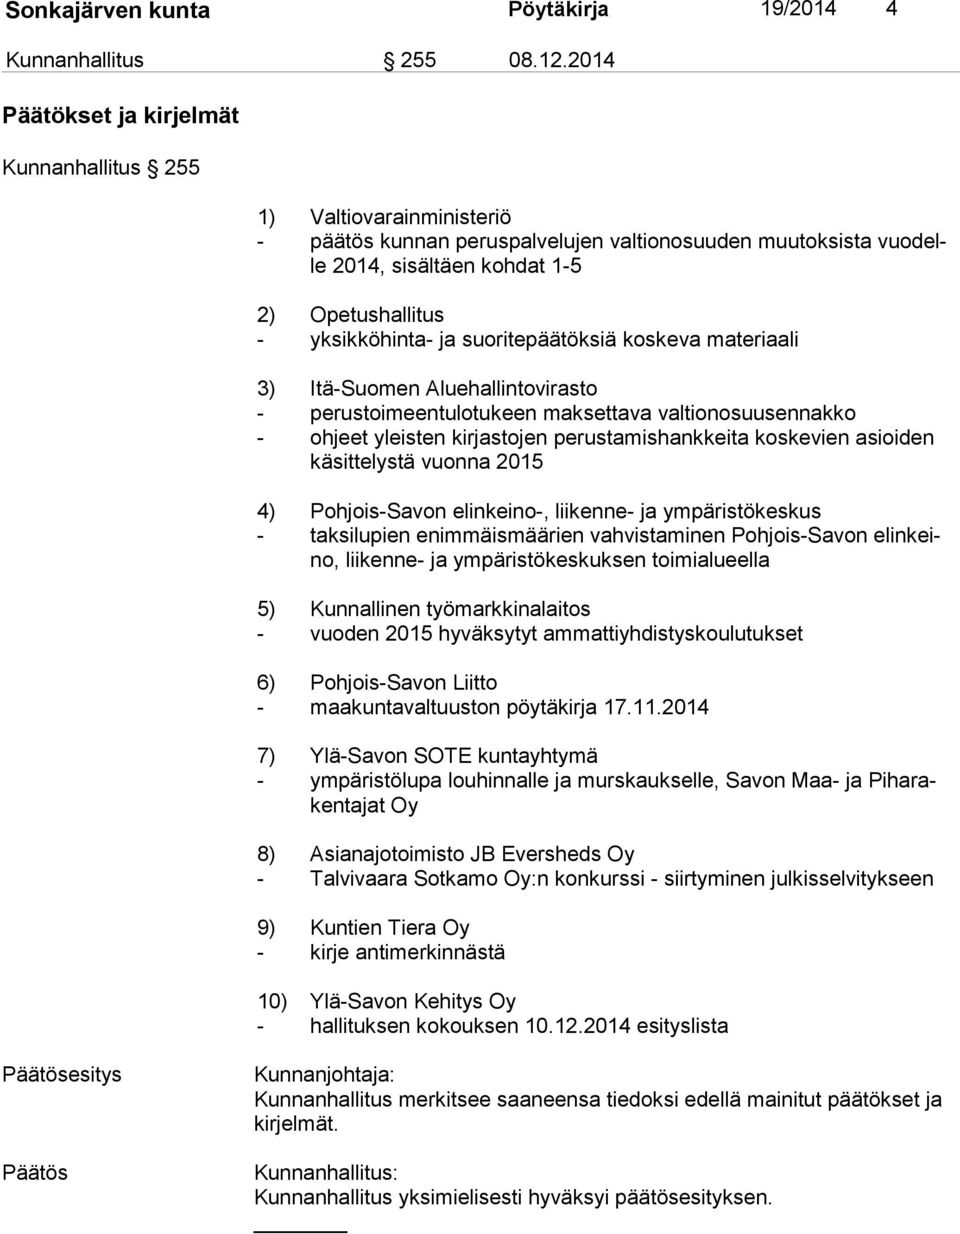 yksikköhinta- ja suoritepäätöksiä koskeva materiaali 3) Itä-Suomen Aluehallintovirasto - perustoimeentulotukeen maksettava valtionosuusennakko - ohjeet yleisten kirjastojen perustamishankkeita